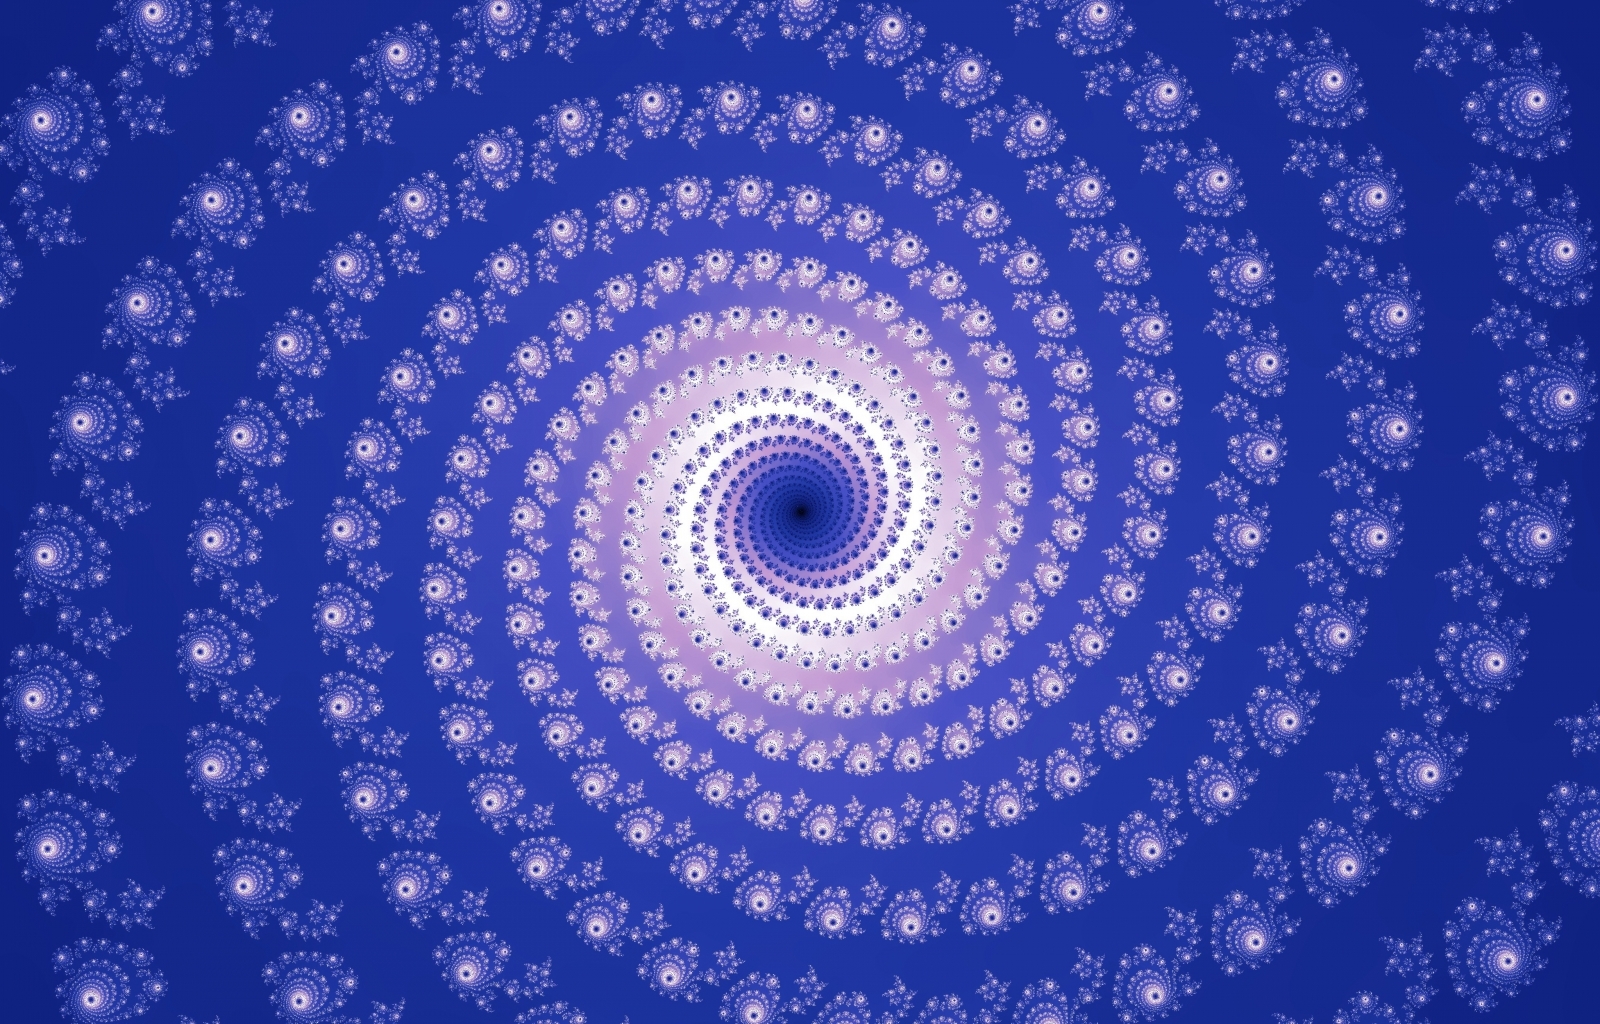 background, blue, patterns Image for desktop